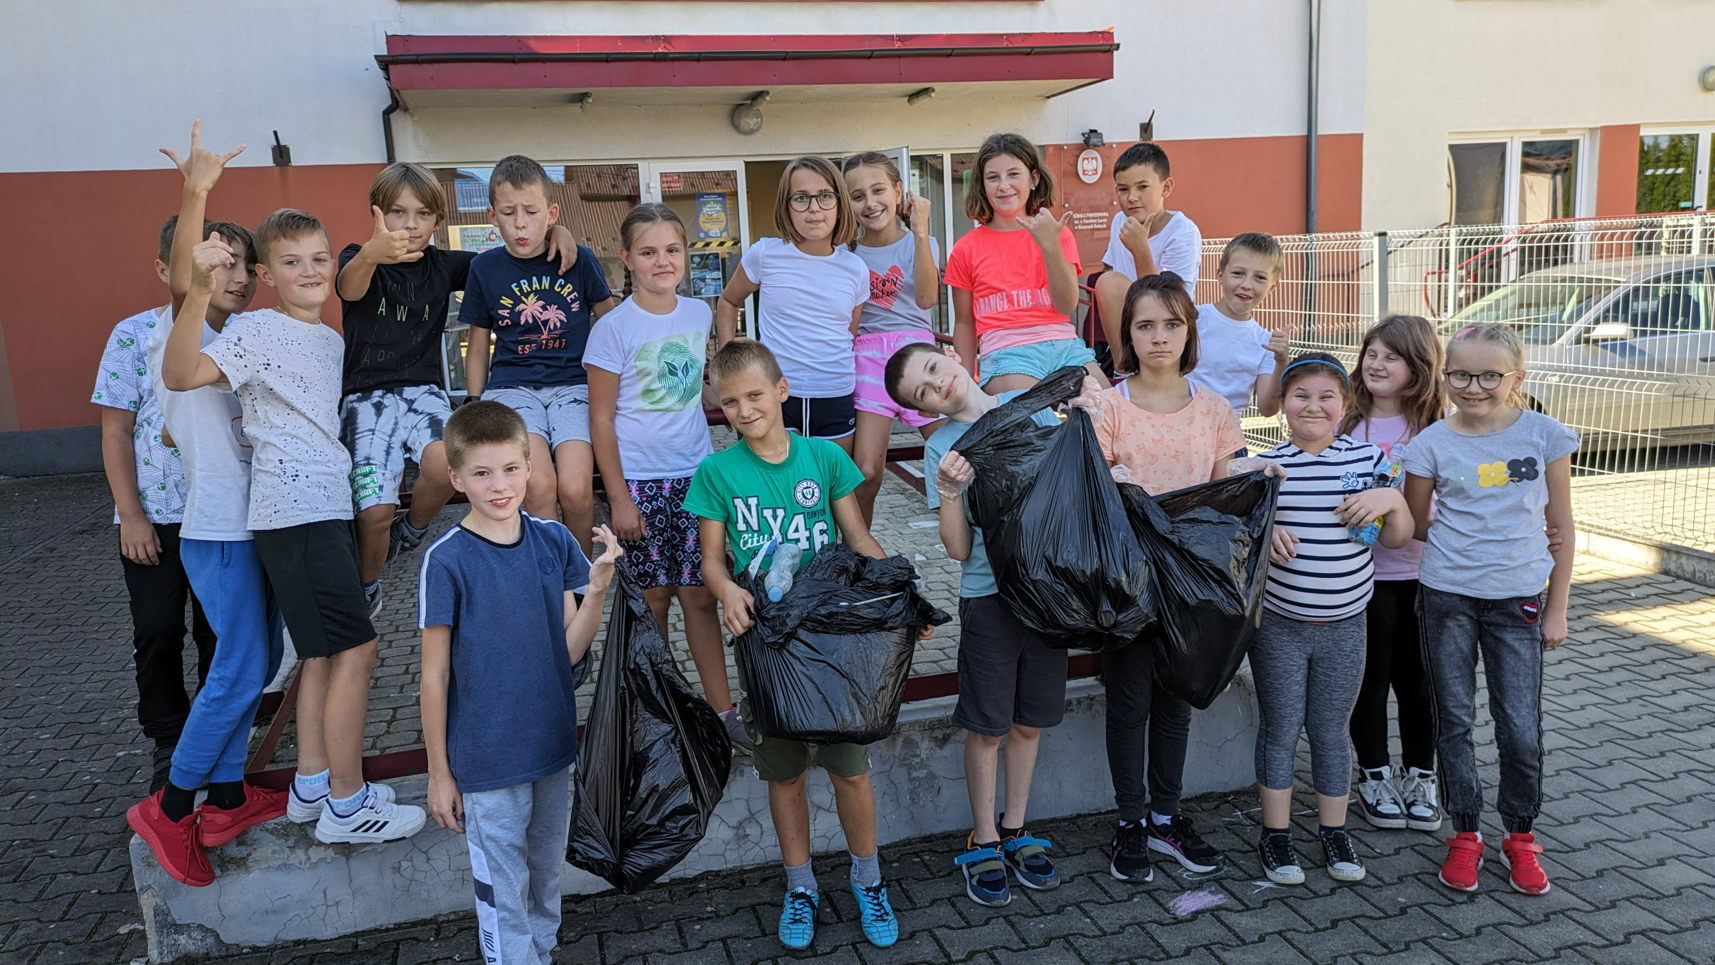 uczniowie szkoły podczas akcji sprzątania świata przed wejściem do szkoły